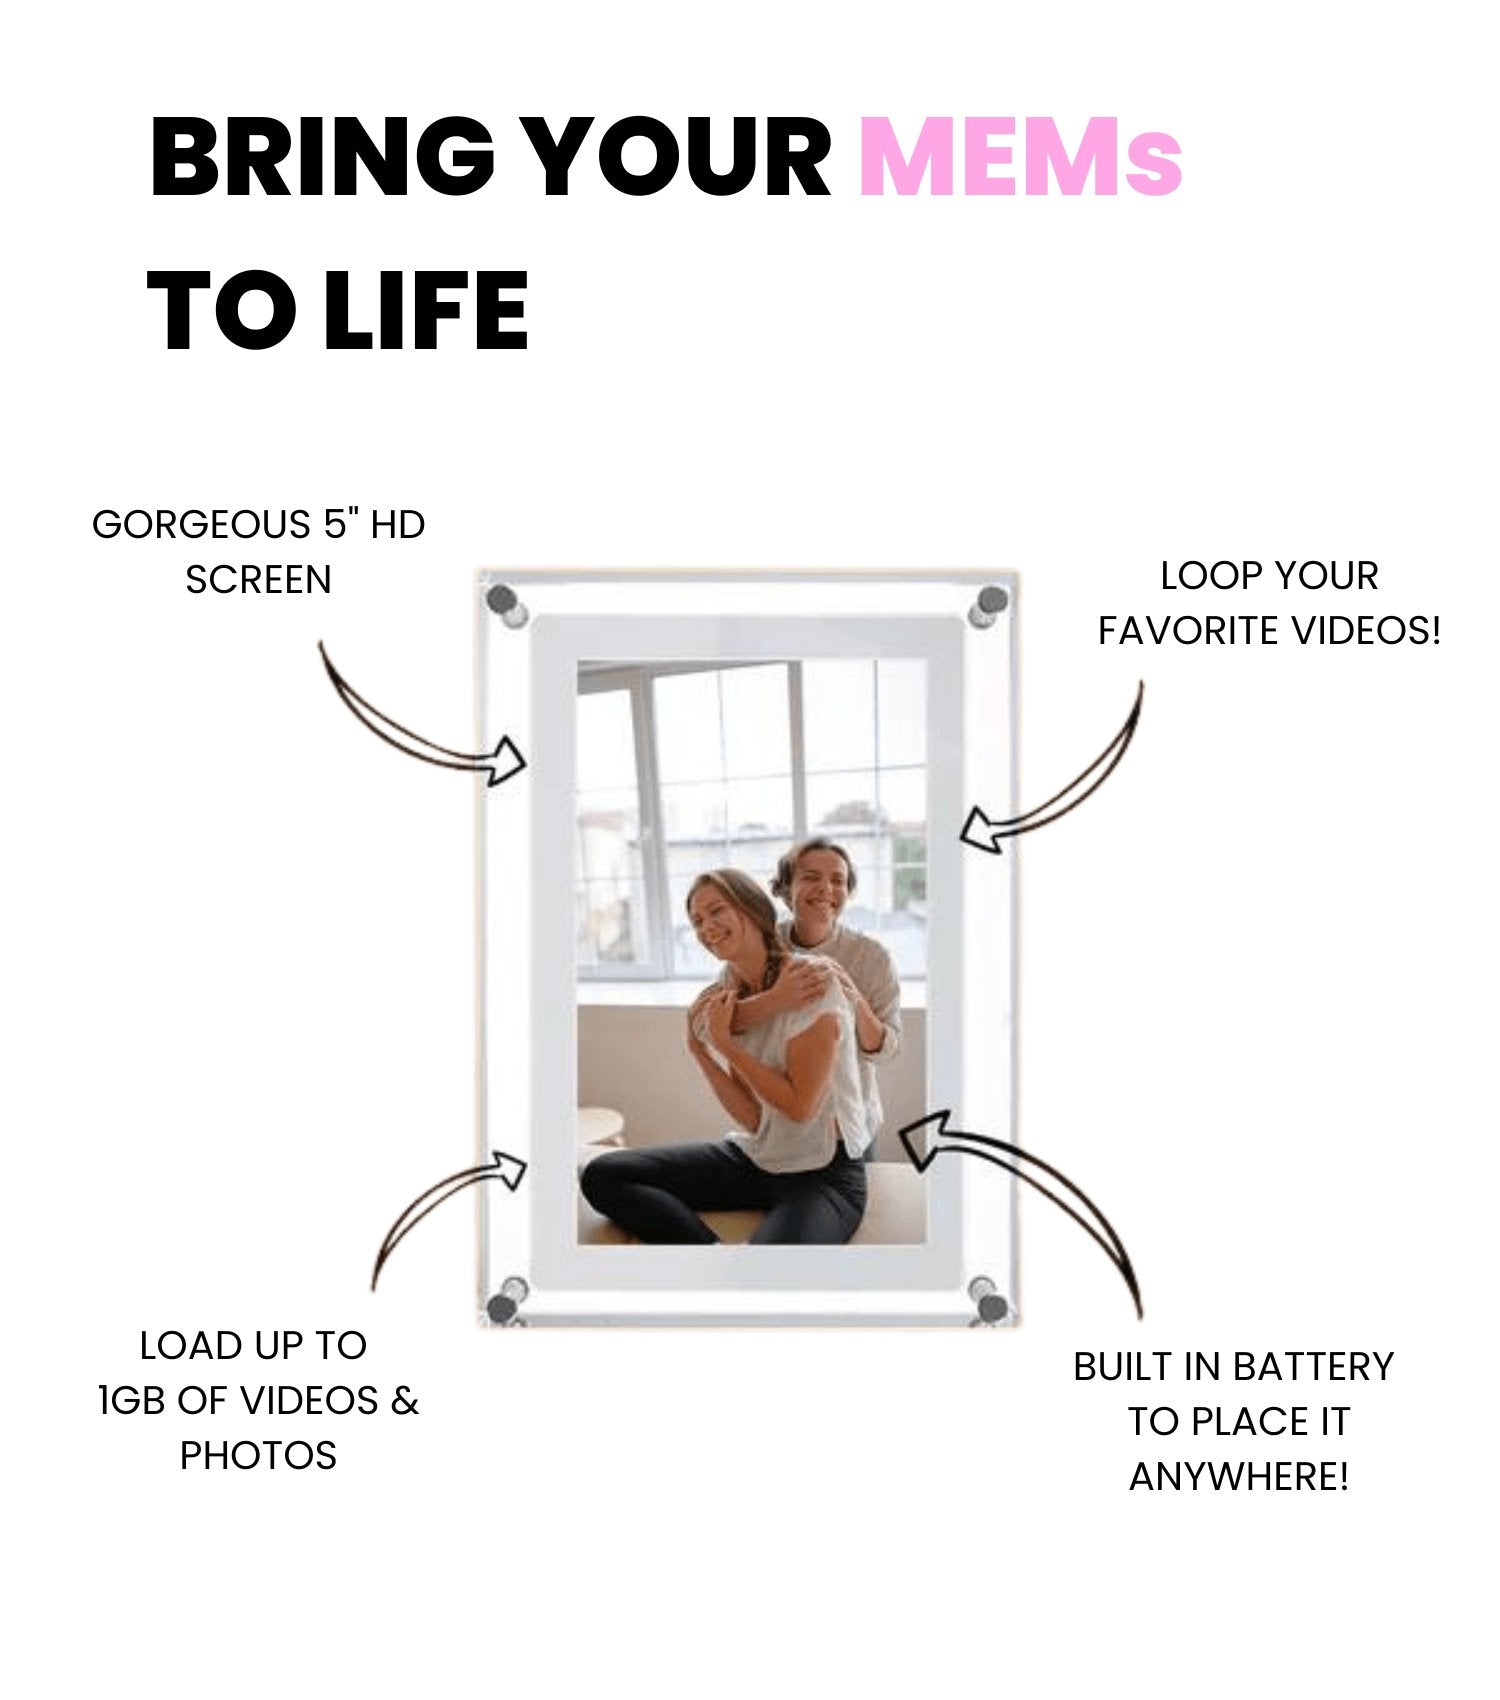 MEMs Digital Memories - ItemBear.com